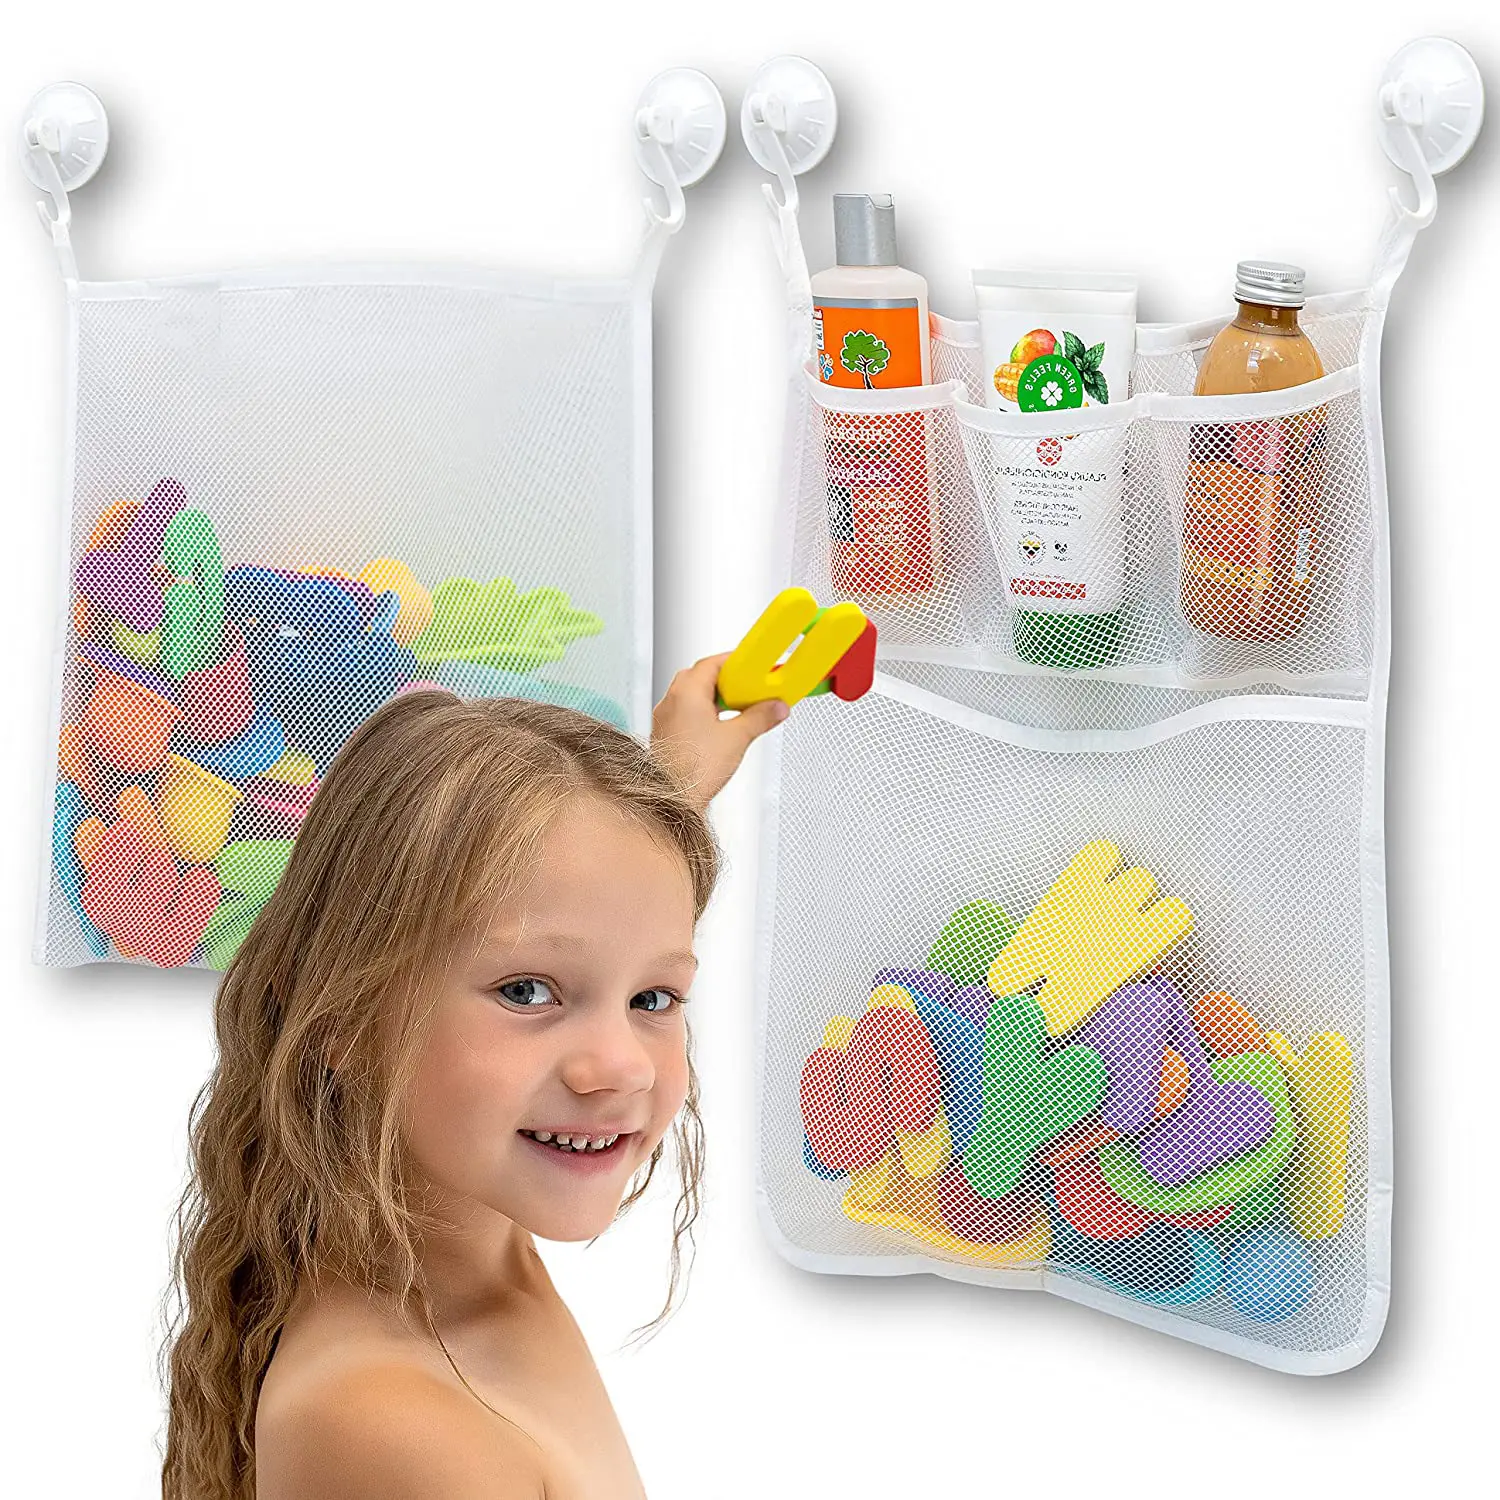 Organizador de juguetes de baño de malla OEM y ODM, soporte de juguete para bañera y baño, bolsas de red multiusos, almacenamiento de juguetes de baño para bebés para niños y niños pequeños